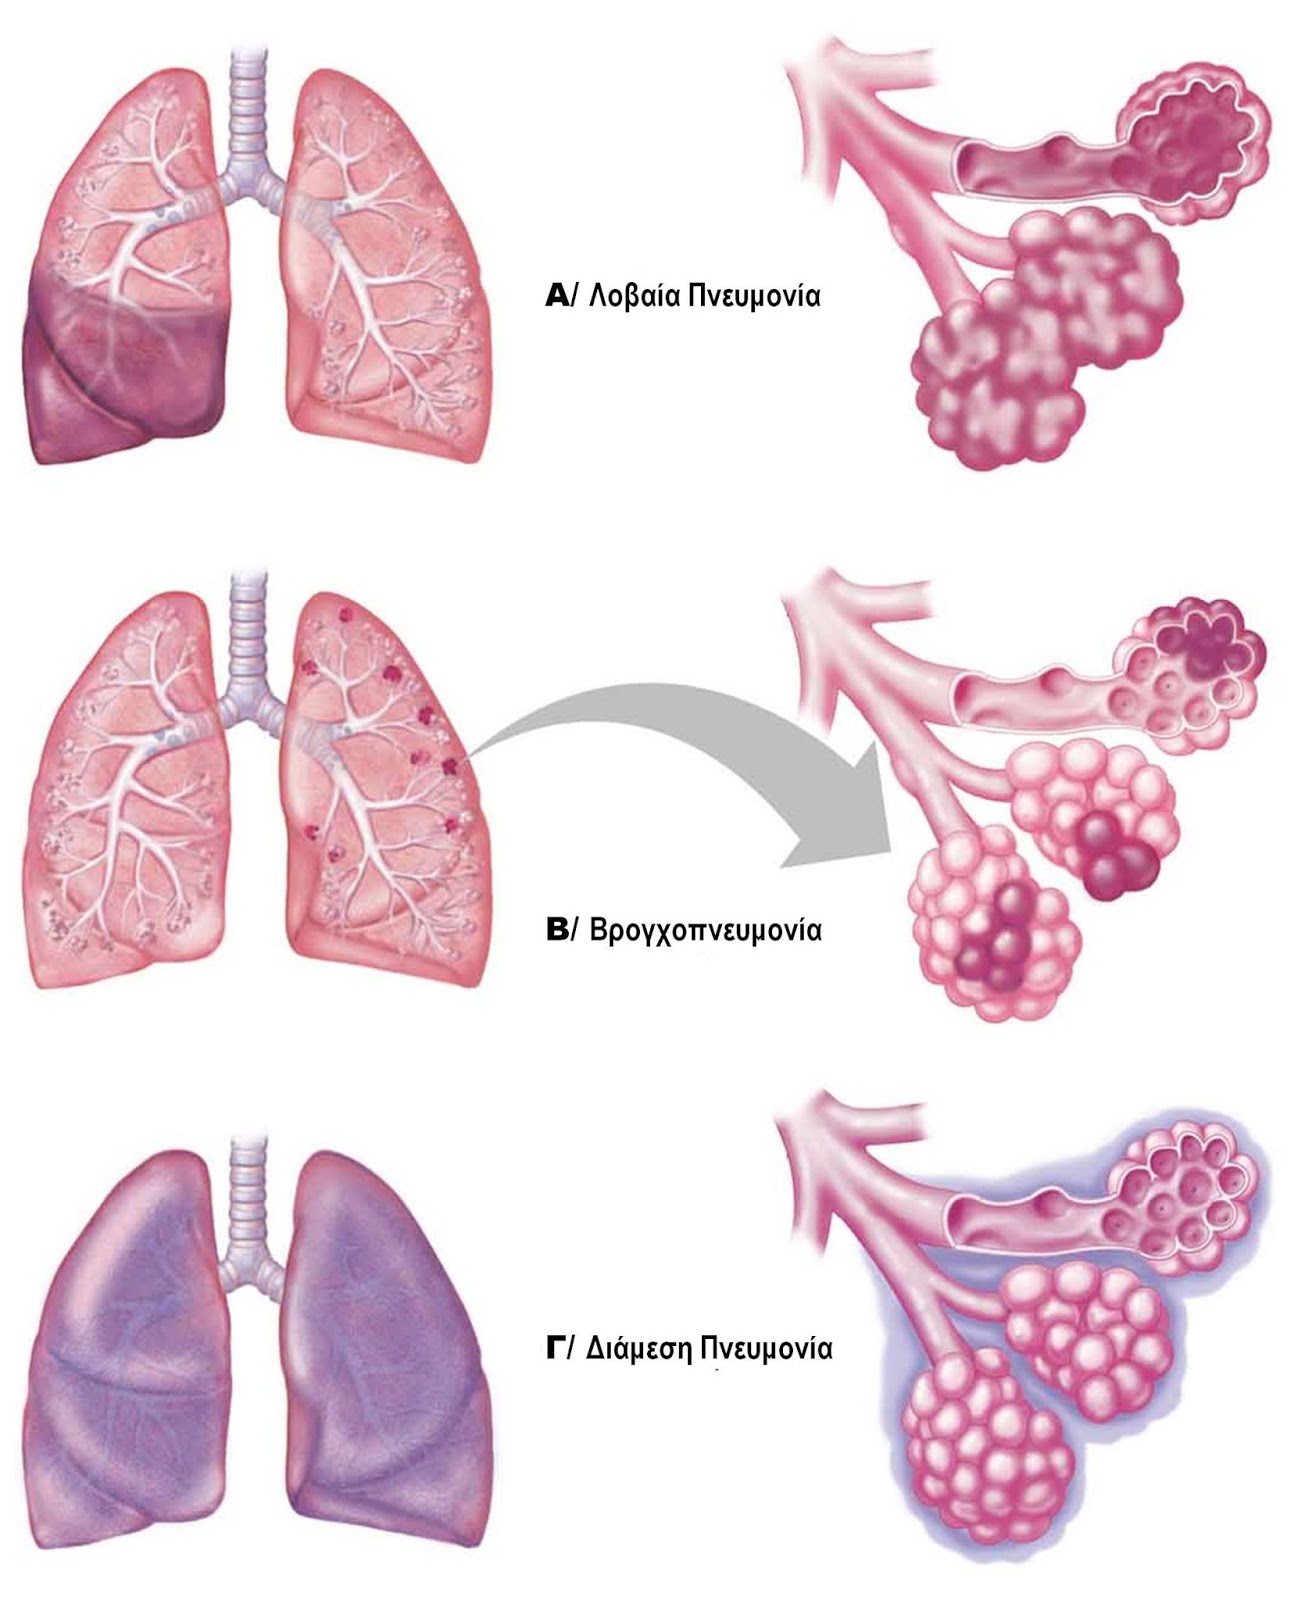 Пневмония легких осложнения